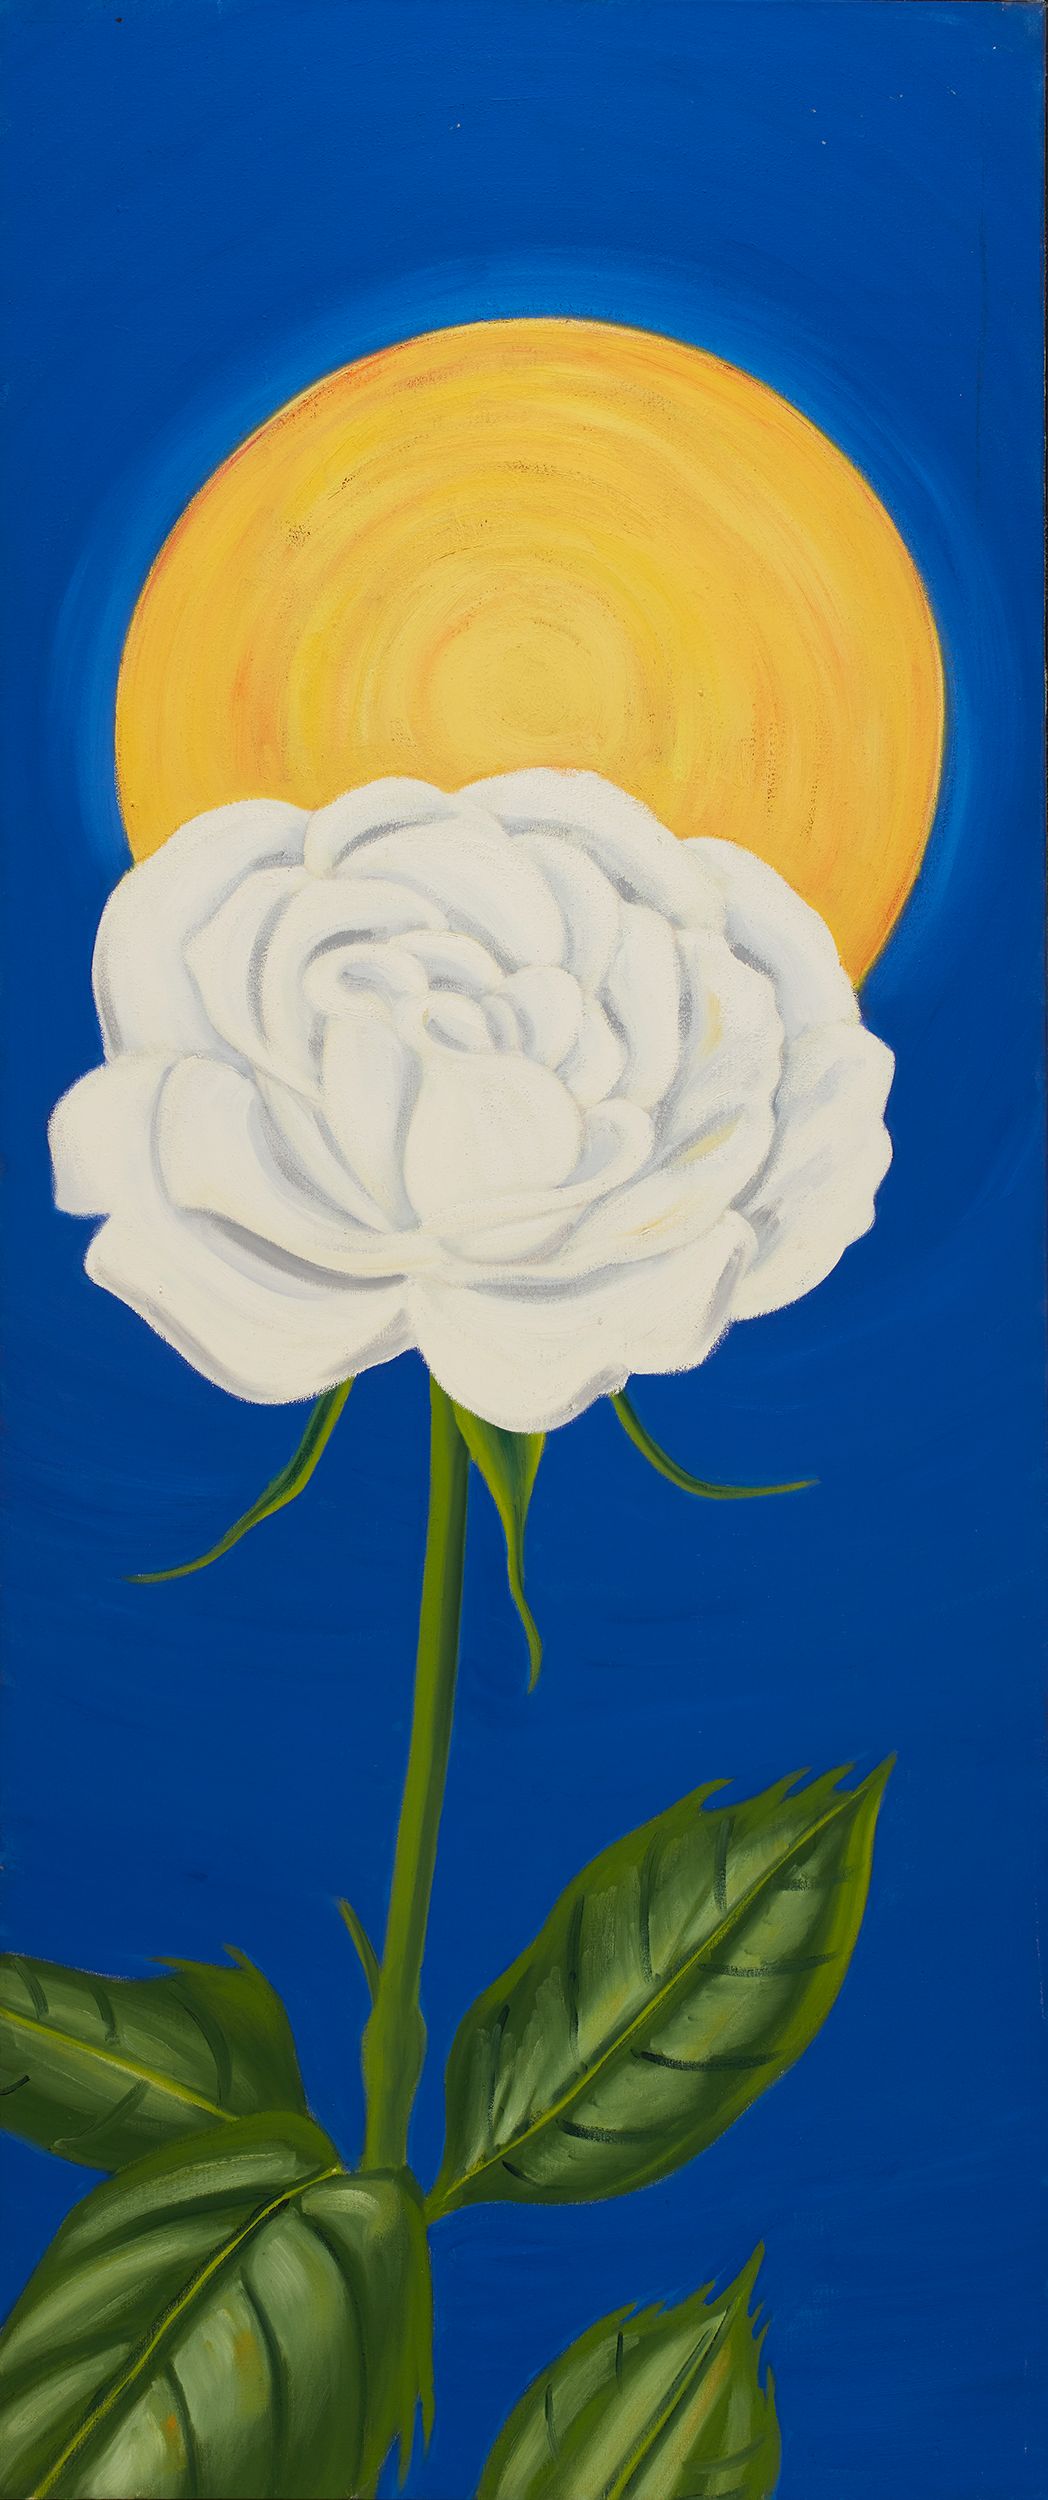   White Rose/Sun . 1989 Oil on linen 66” x 28” 